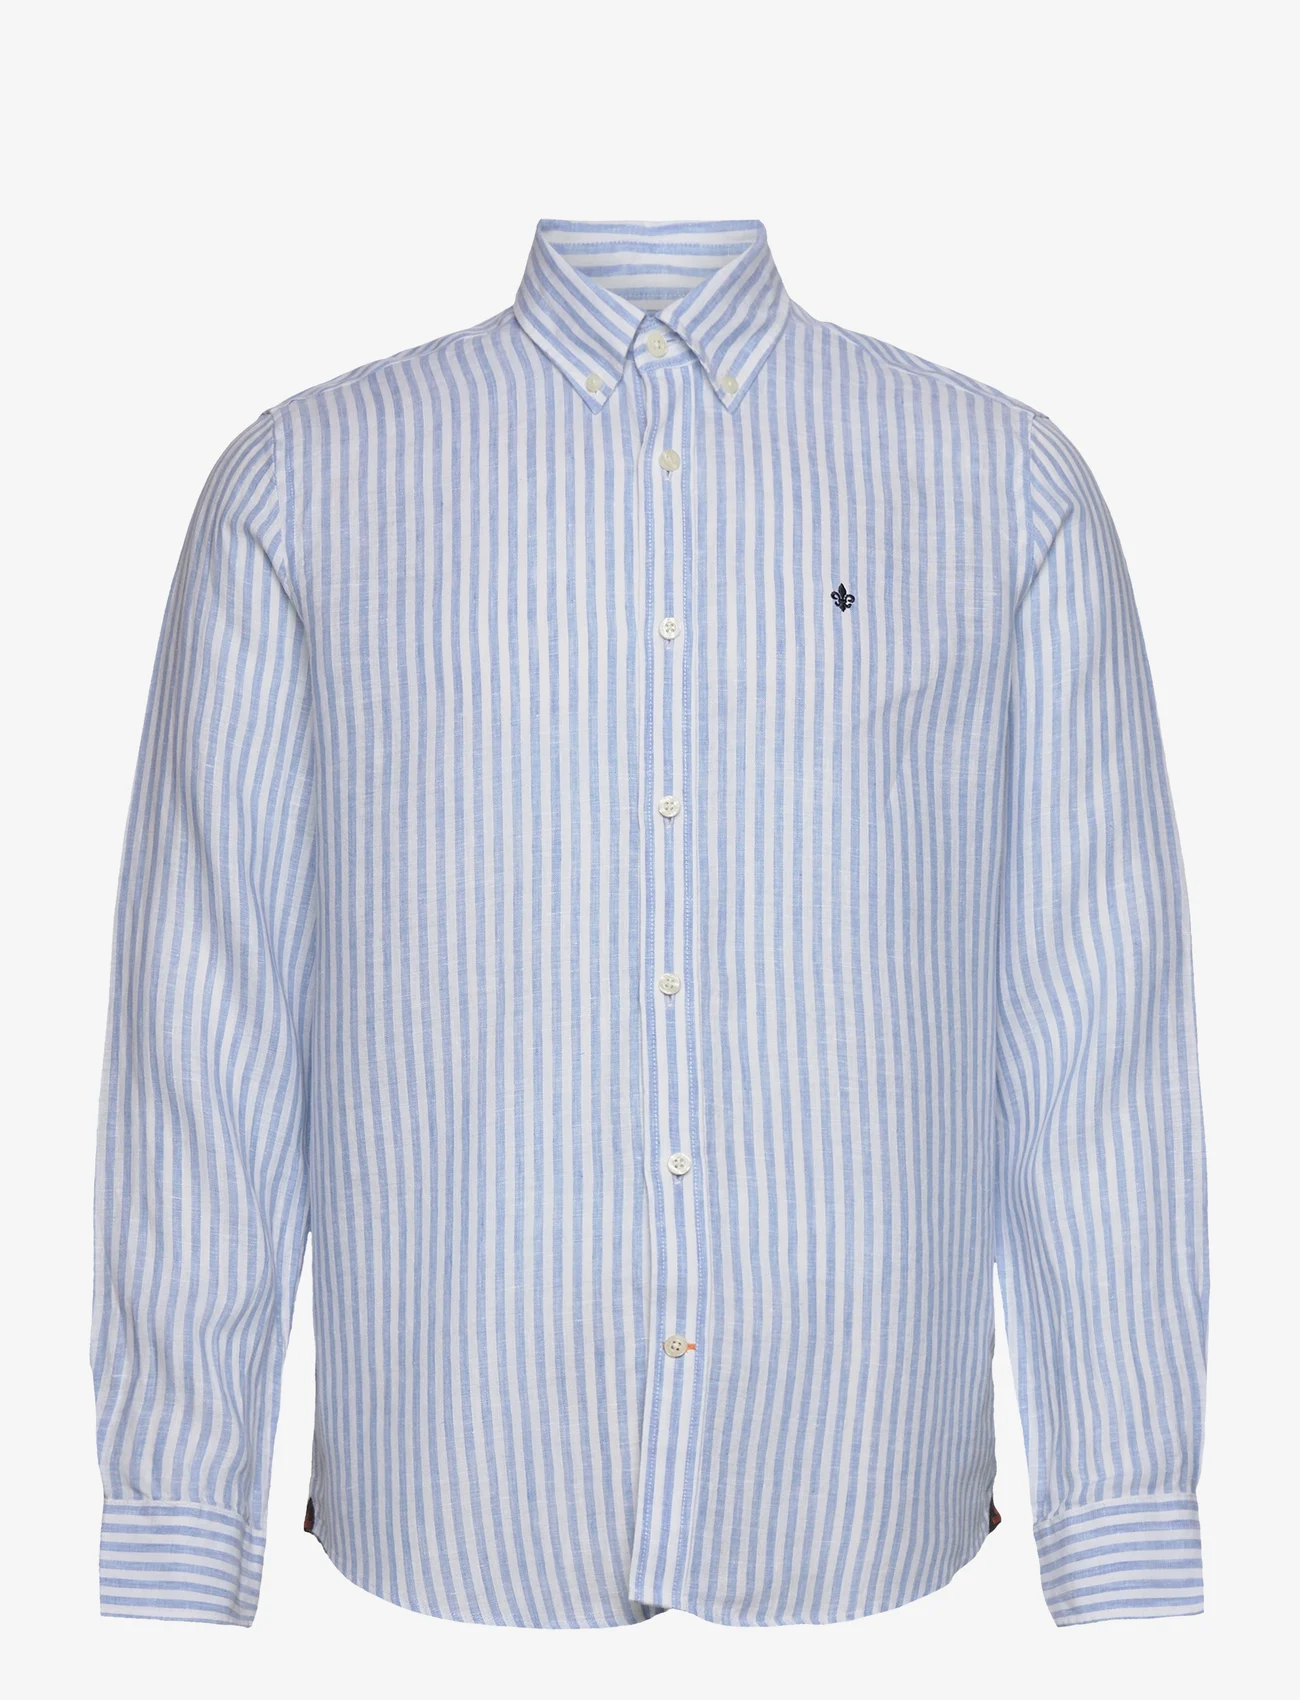 Morris - Douglas Linen Stripe BD Shirt - linnen overhemden - blue - 0